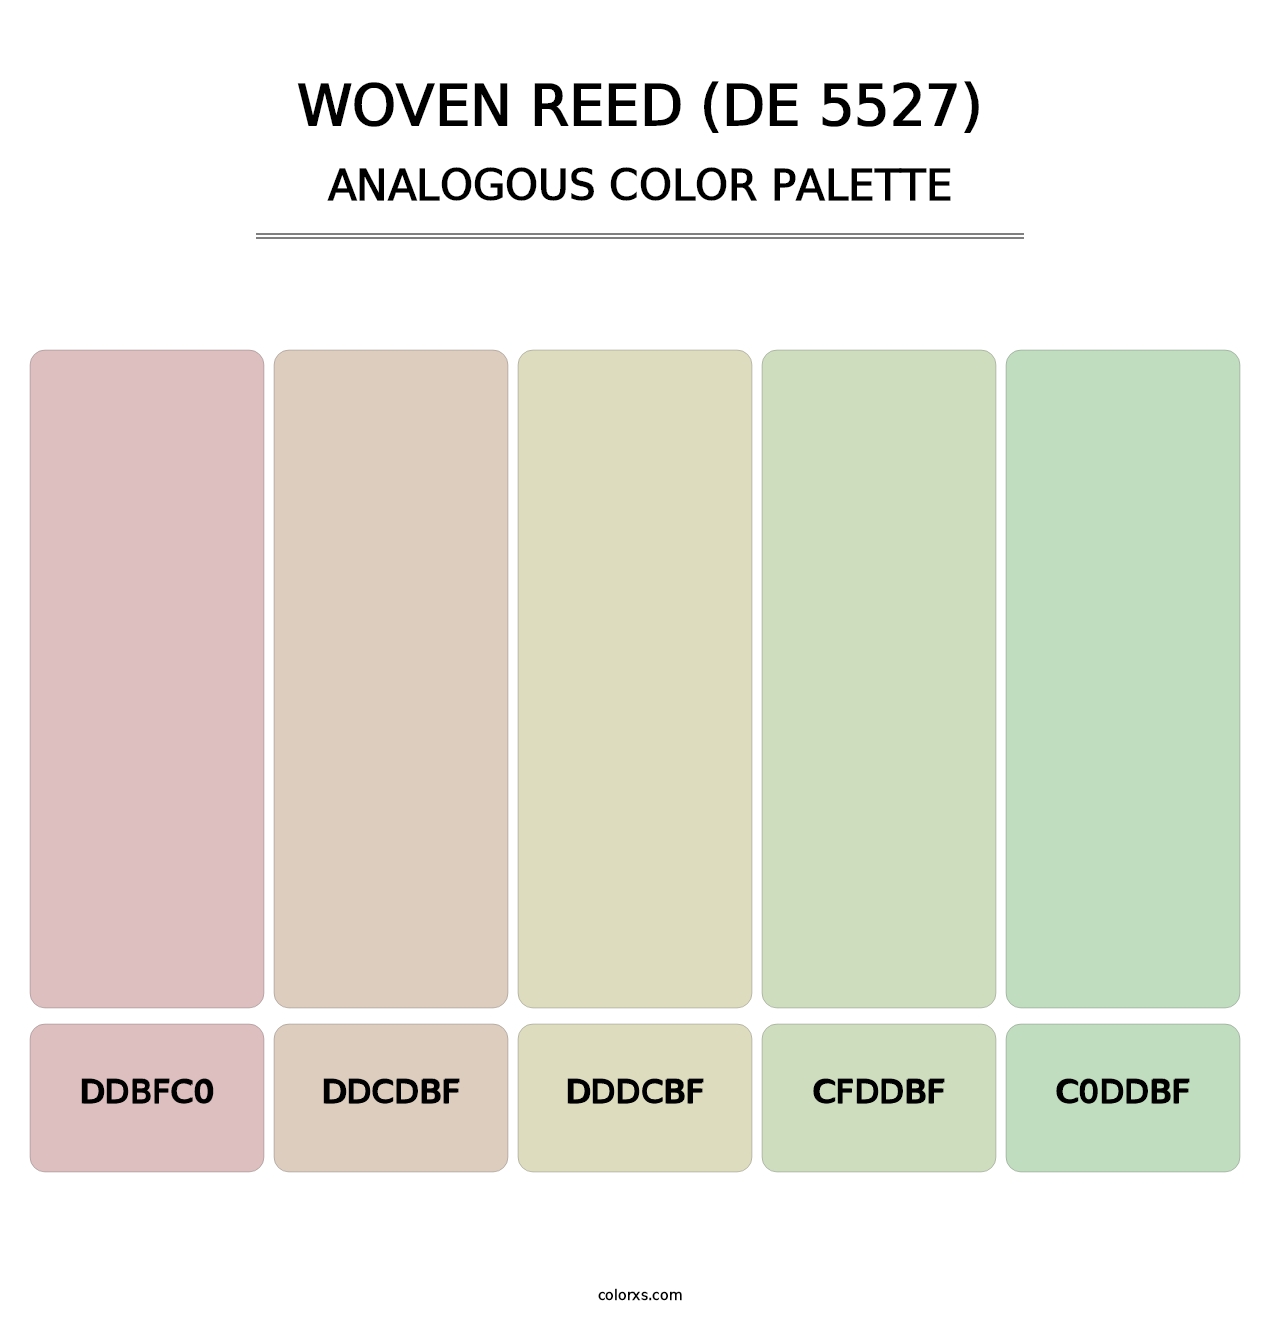 Woven Reed (DE 5527) - Analogous Color Palette